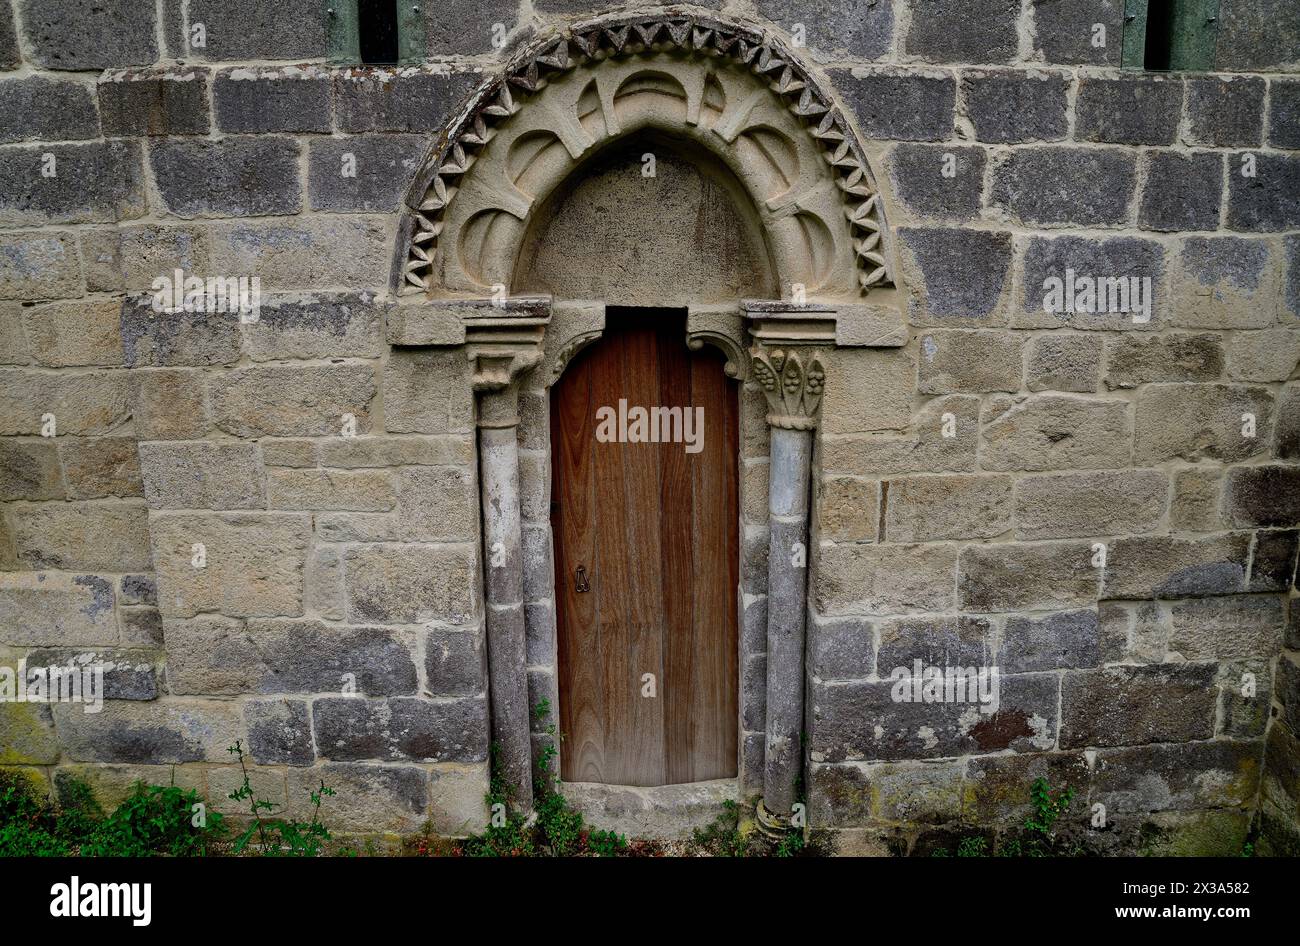 Particolare nella chiesa di Santo Estebo de Atan, Panton, Lugo, Spagna Foto Stock